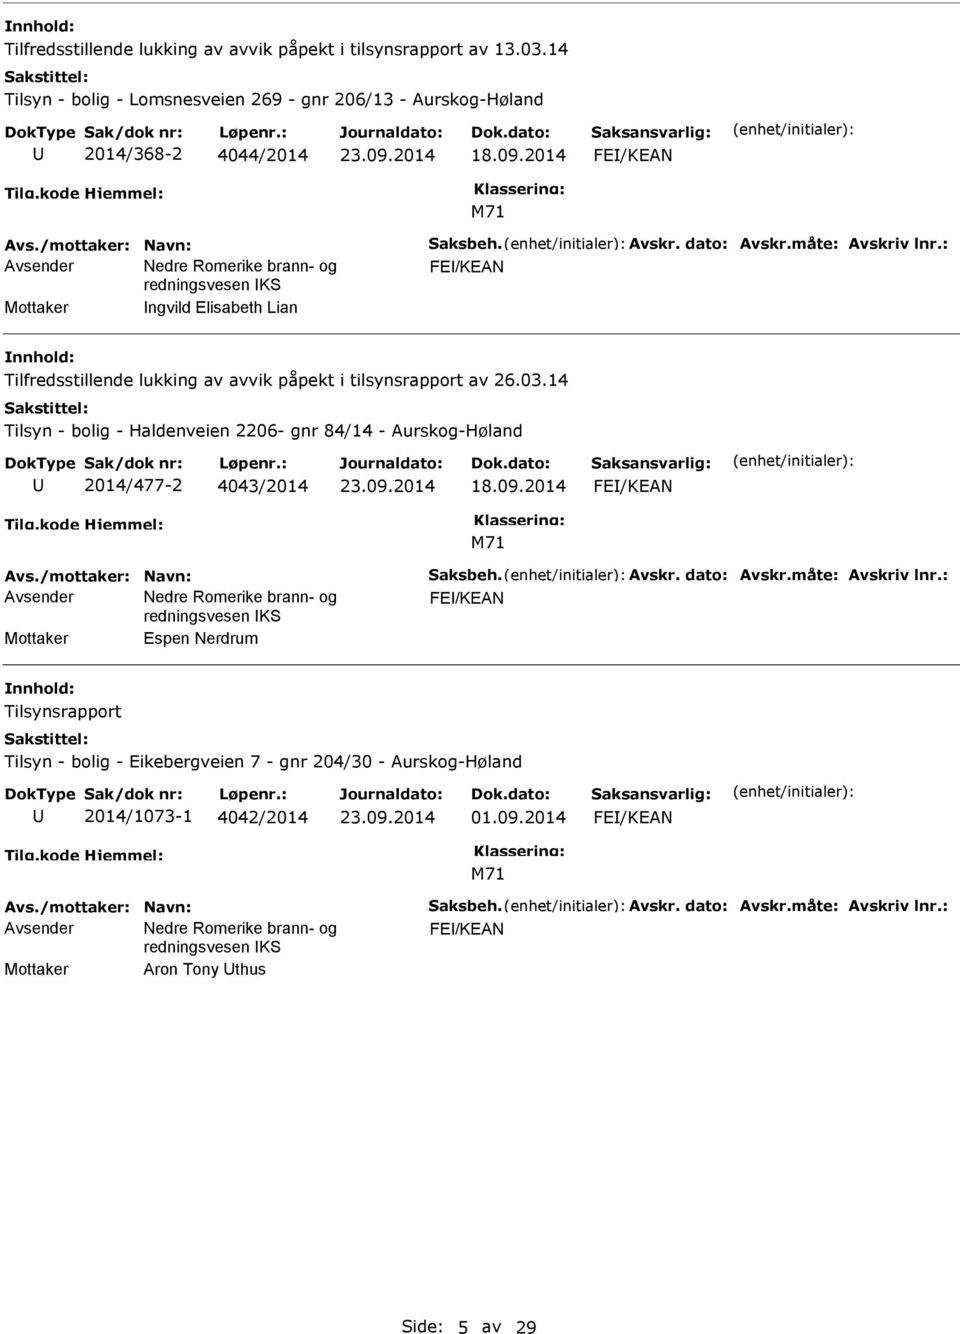 2014 FE/KEAN FE/KEAN Mottaker ngvild Elisabeth Lian Tilfredsstillende lukking av avvik påpekt i tilsynsrapport av 26.03.